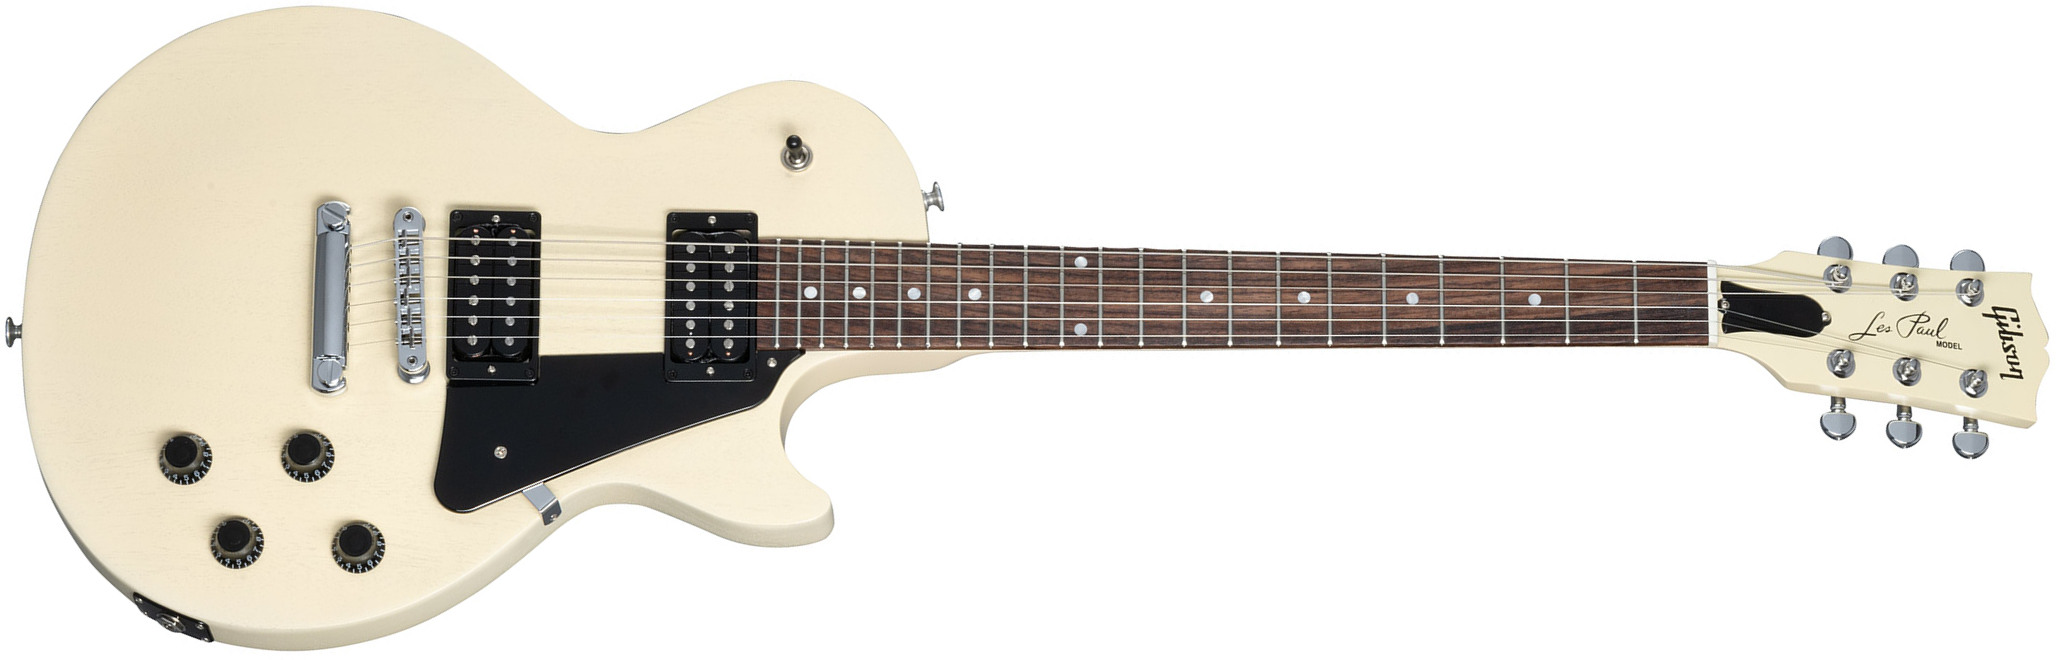 Gibson Les Paul Modern Lite 2h Ht Rw - Tv Wheat - Single-Cut-E-Gitarre - Main picture